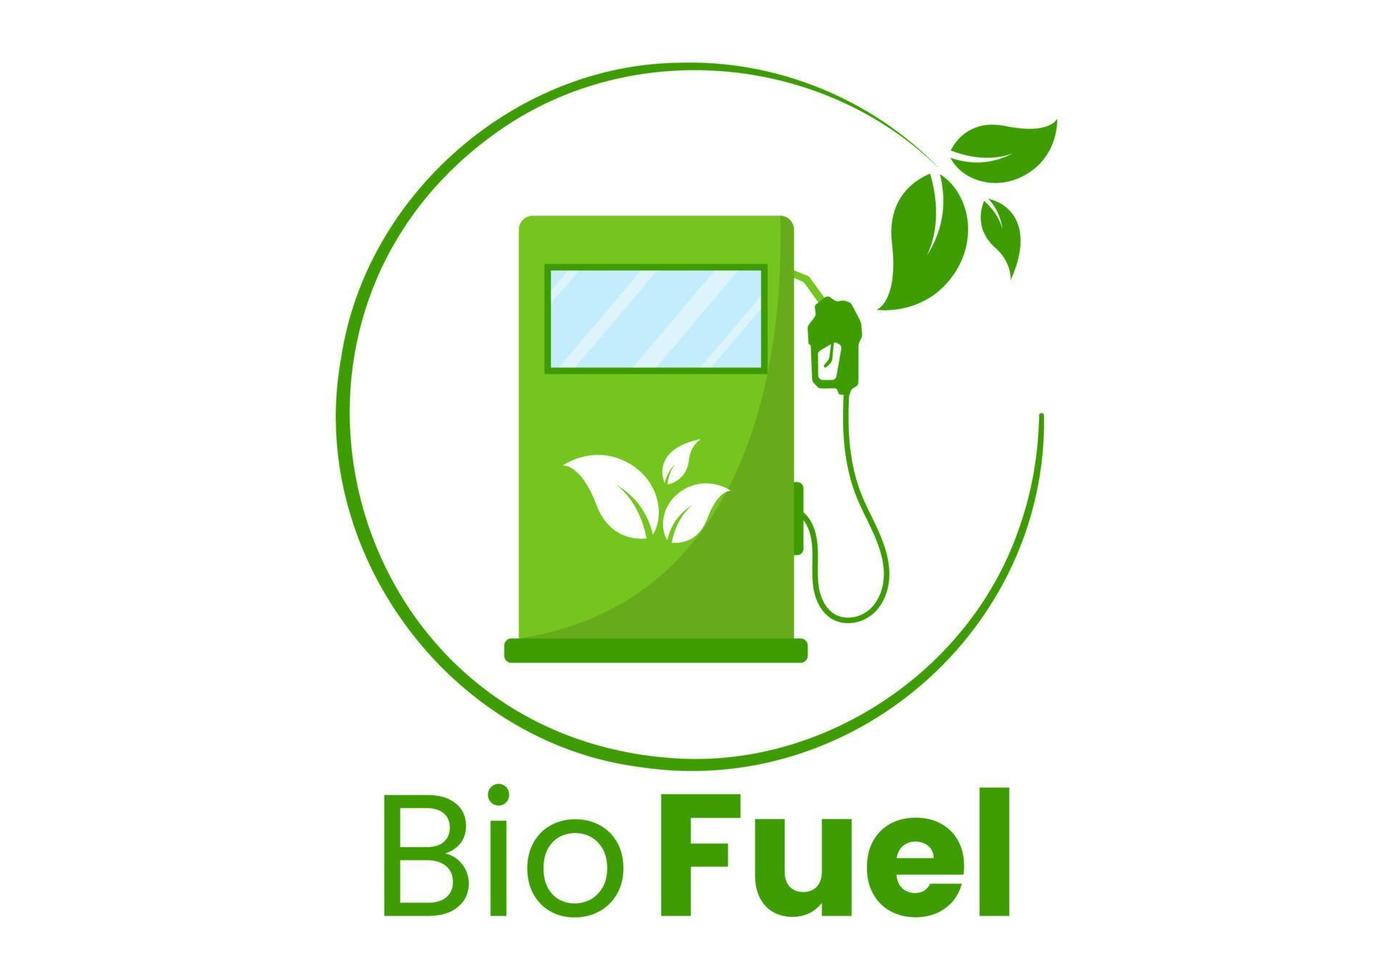 ciclo de vida del biocombustible de materiales naturales y plantas con barriles verdes o energía de producción de biogás en dibujos animados planos dibujados a mano ilustración de plantillas vector